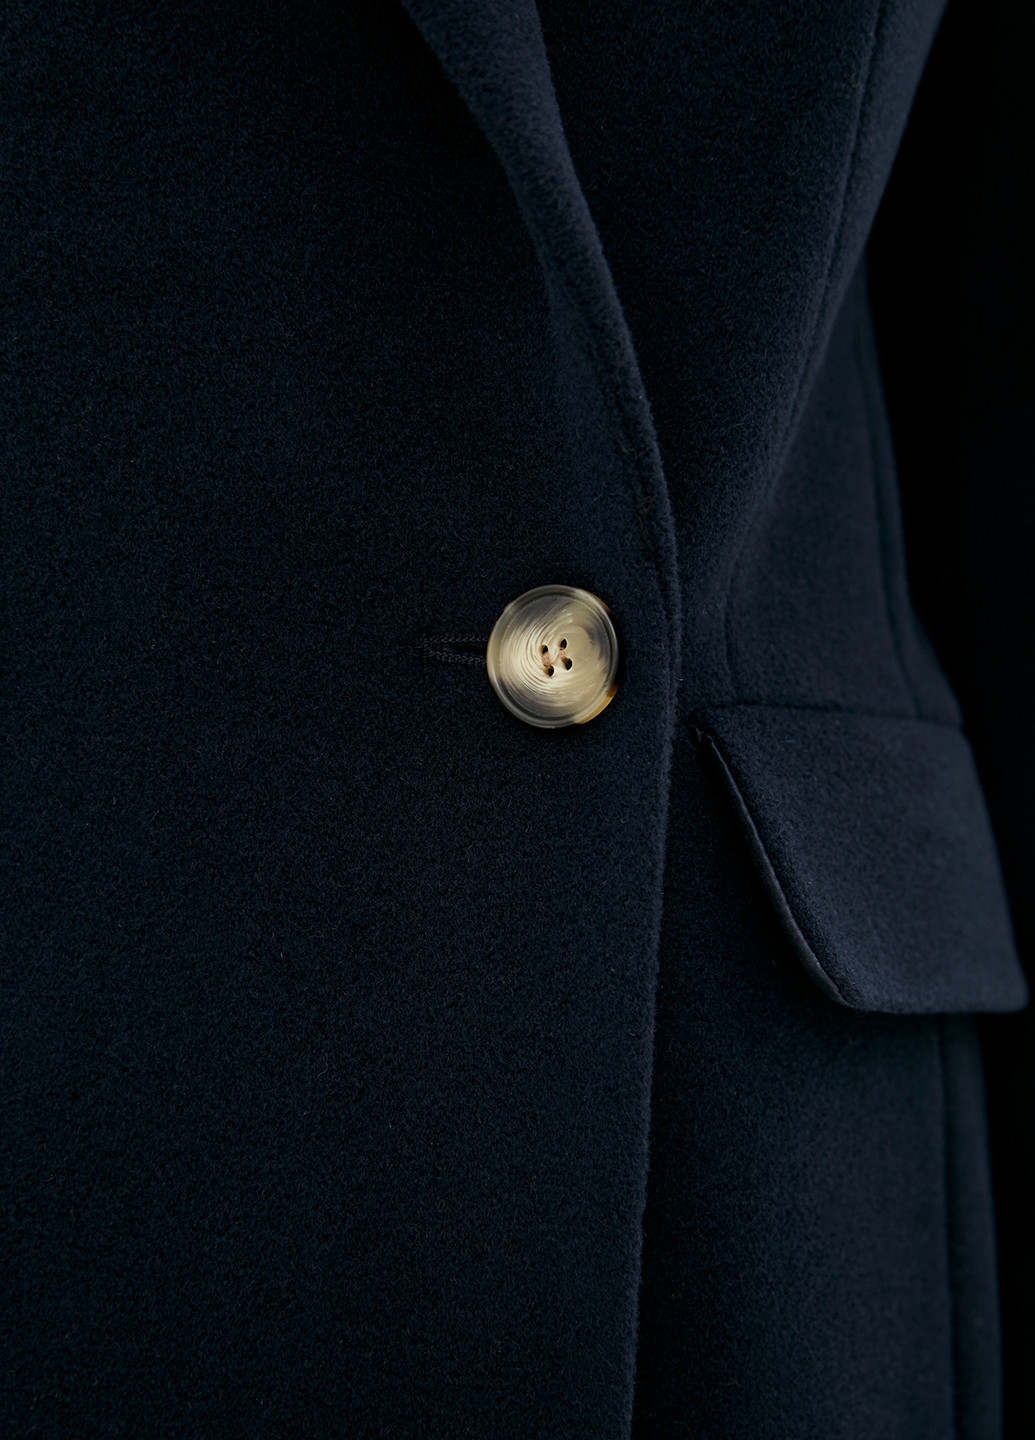 Темно-синее демисезонное Пальто двубортное Florens